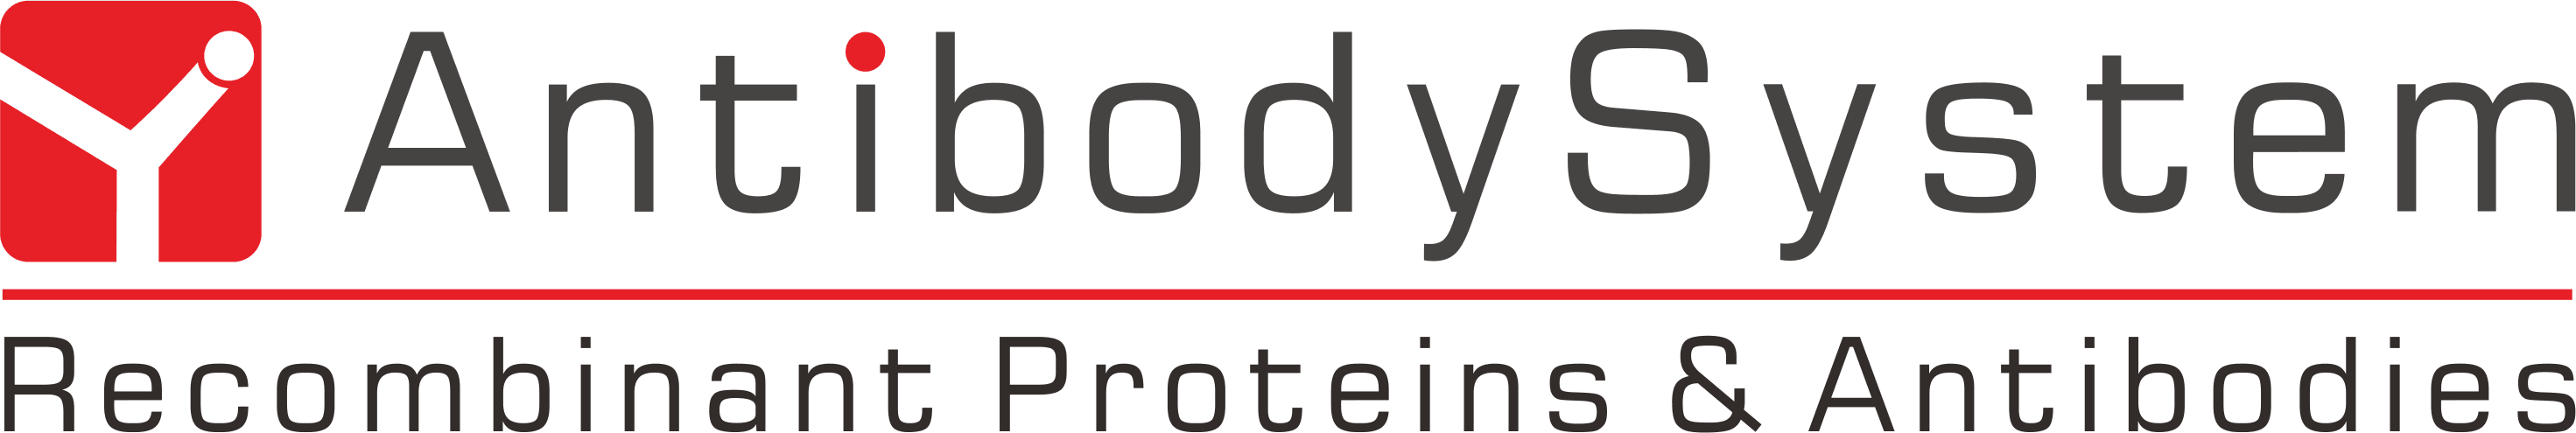 AntibodySystem